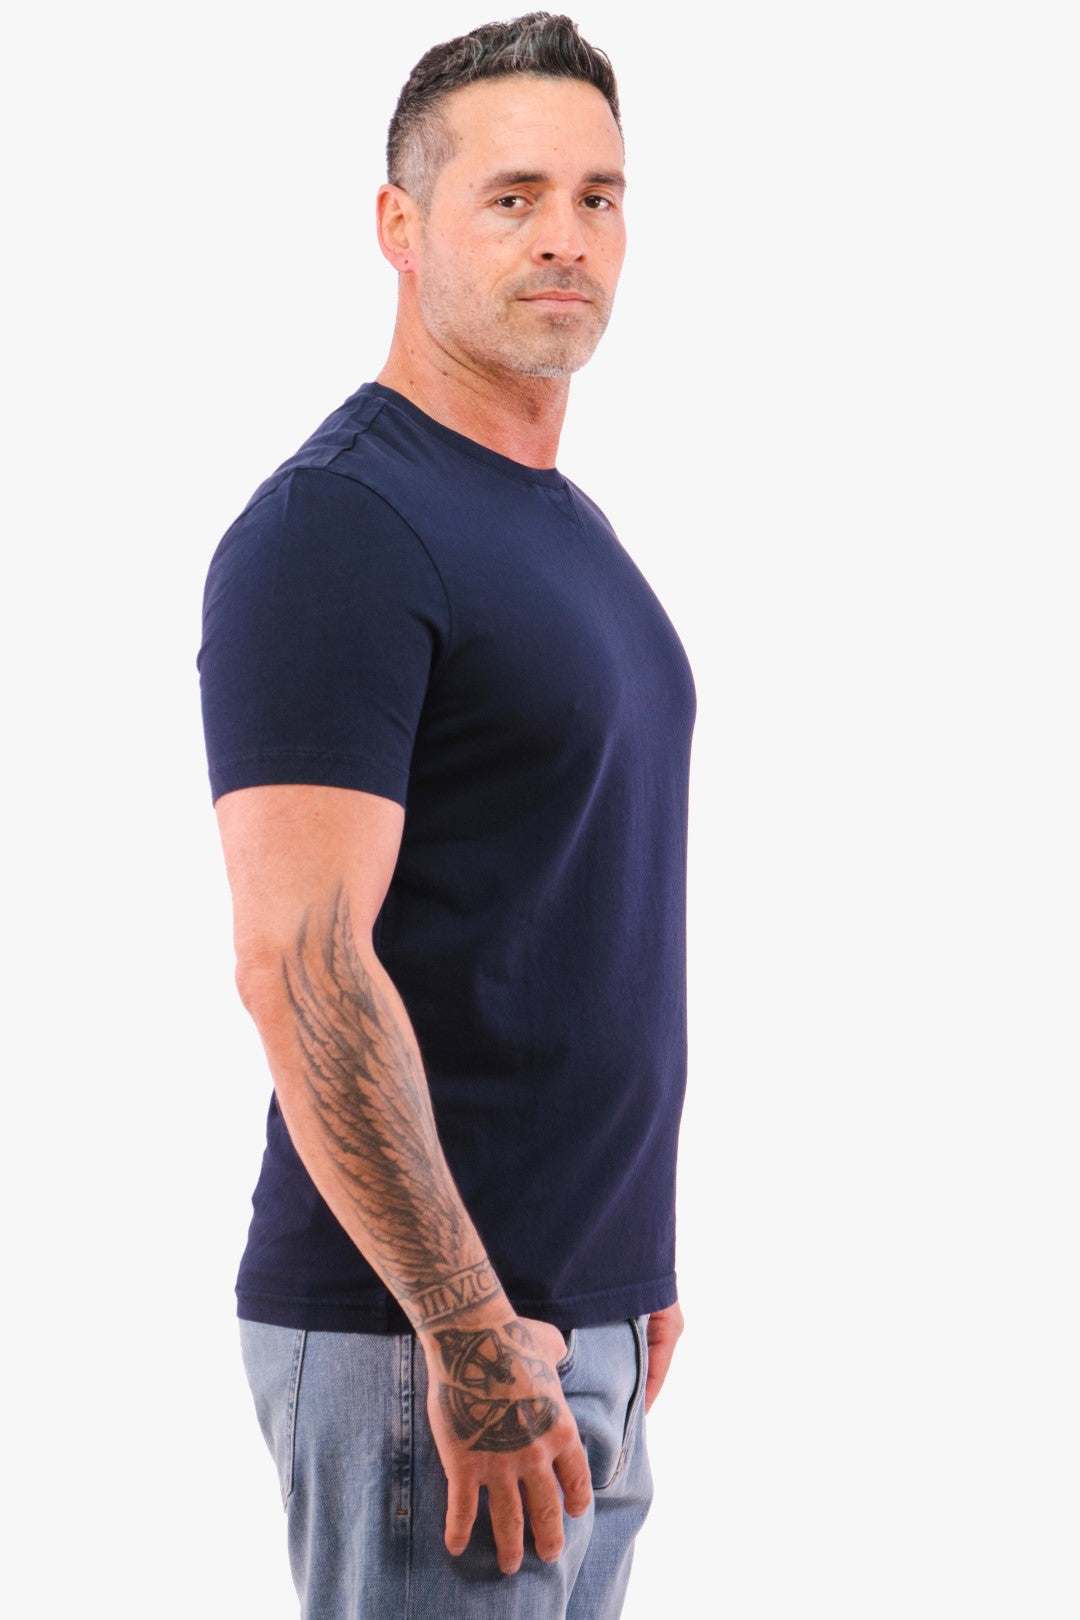 T-Shirt Michael Kors De Couleur Marine Homme